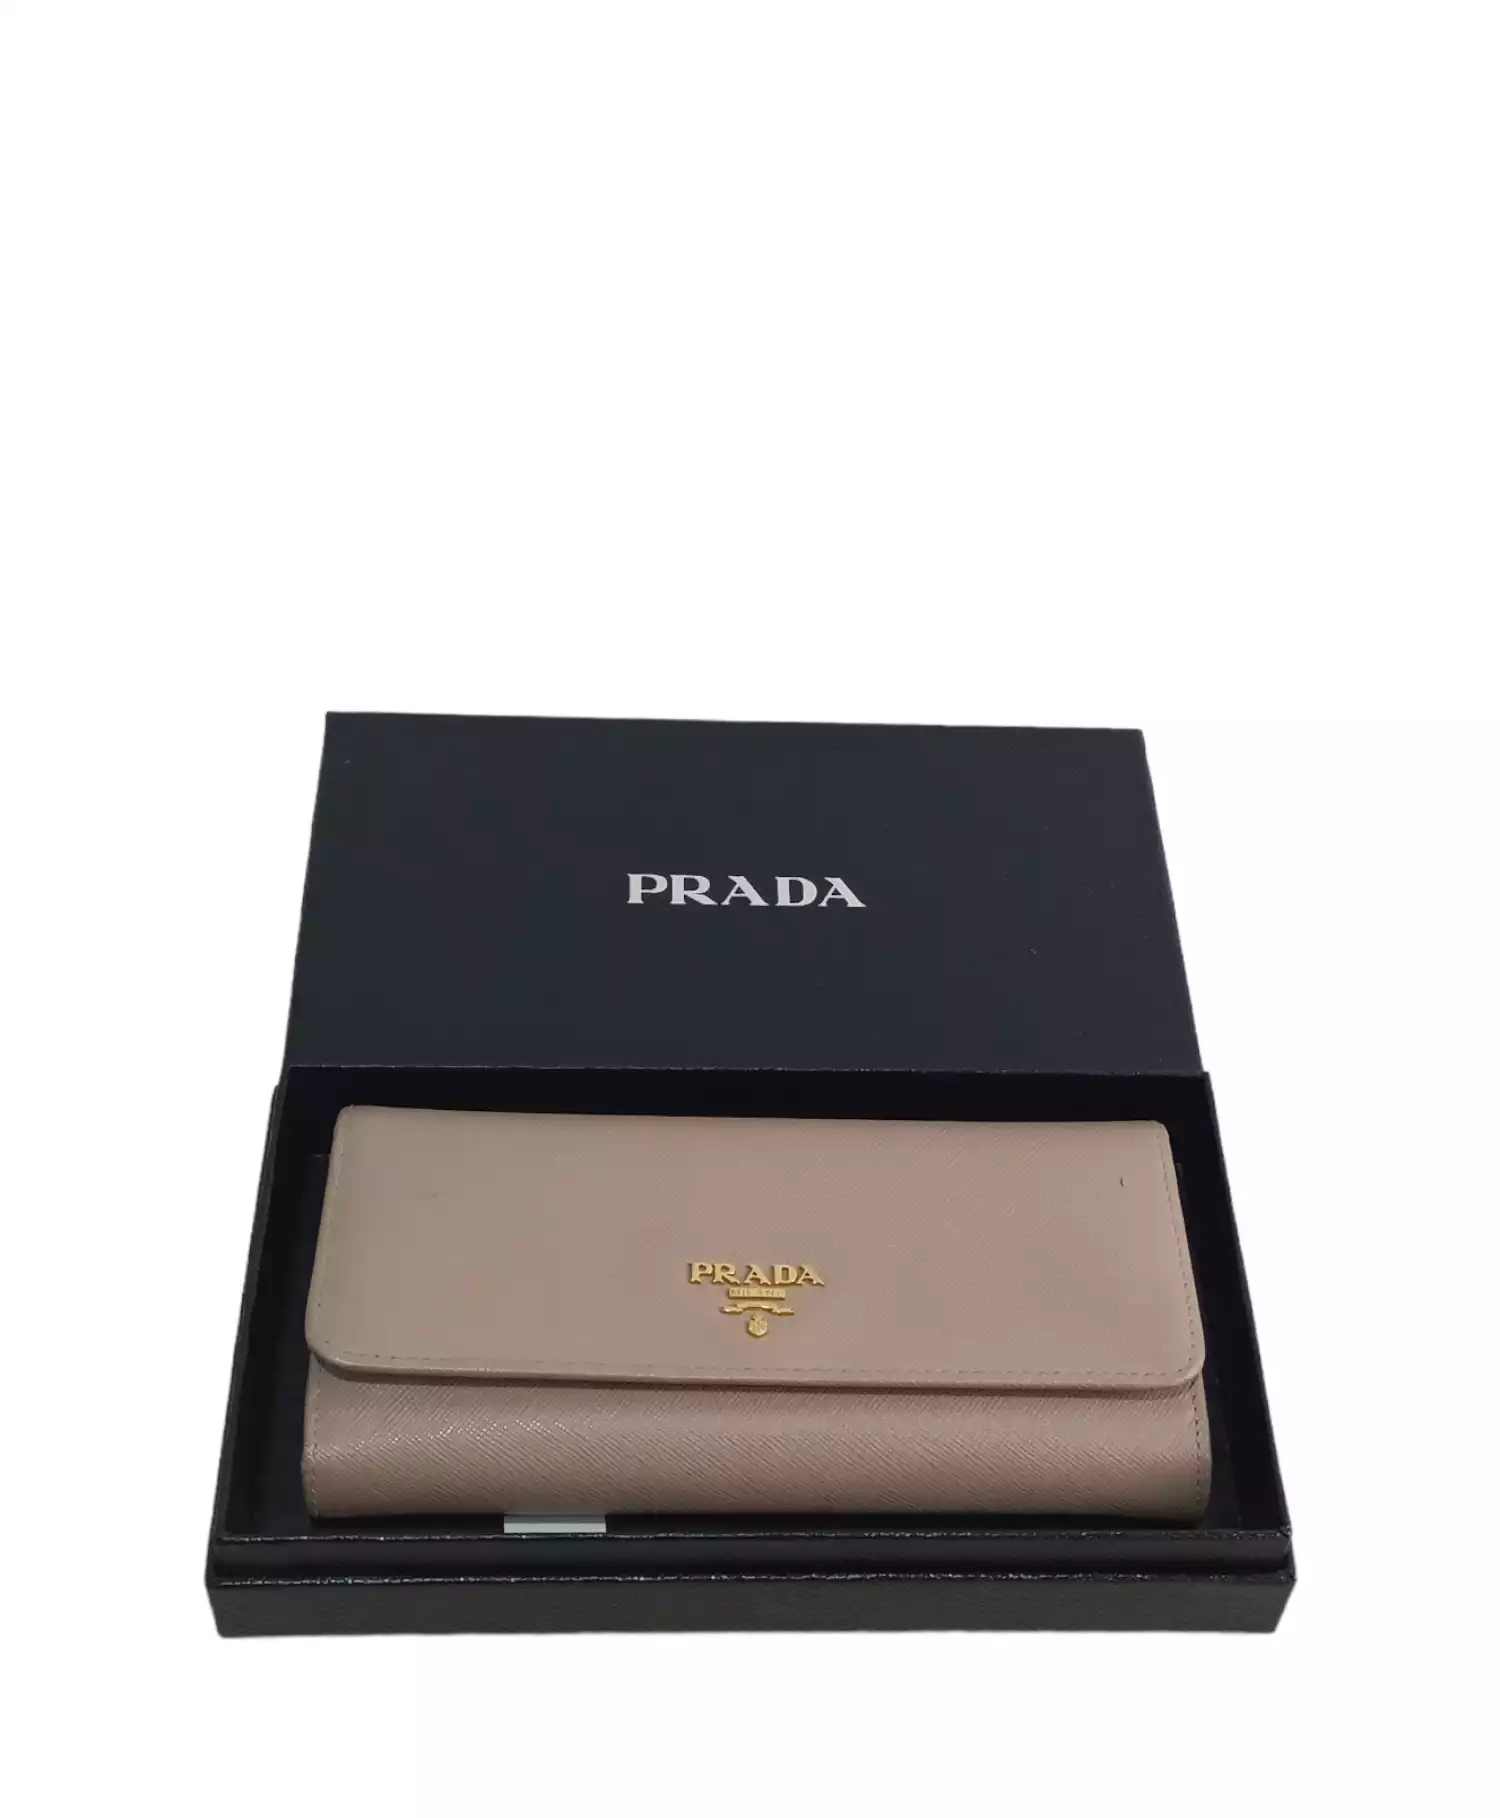 Wallet by Prada